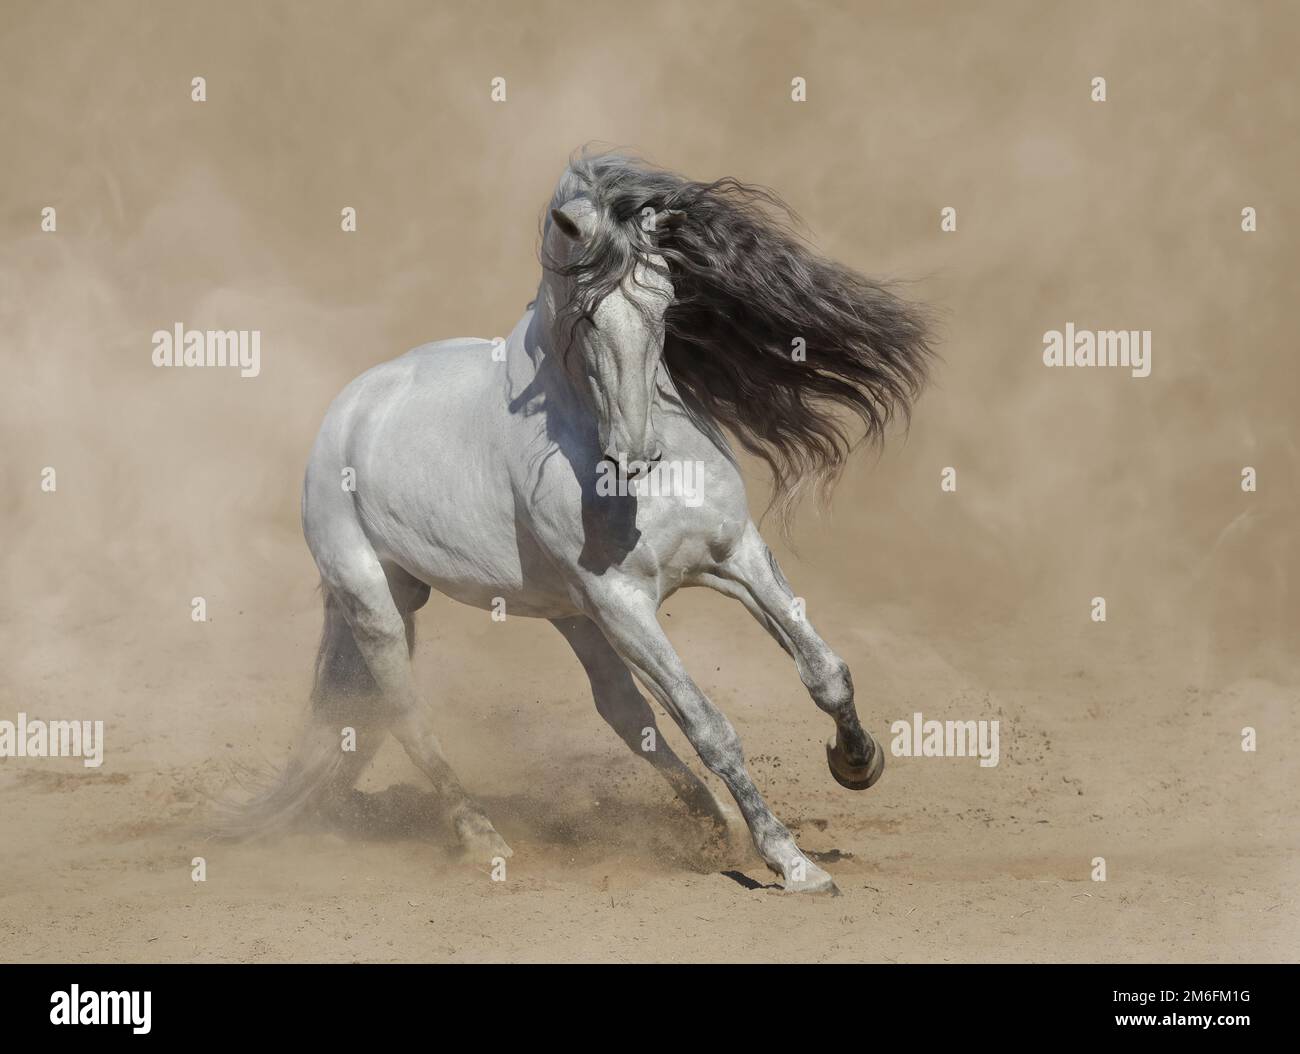 Weißes, reinrassiges andalusisches Pferd, das in Staub auf Sand spielt. Stockfoto